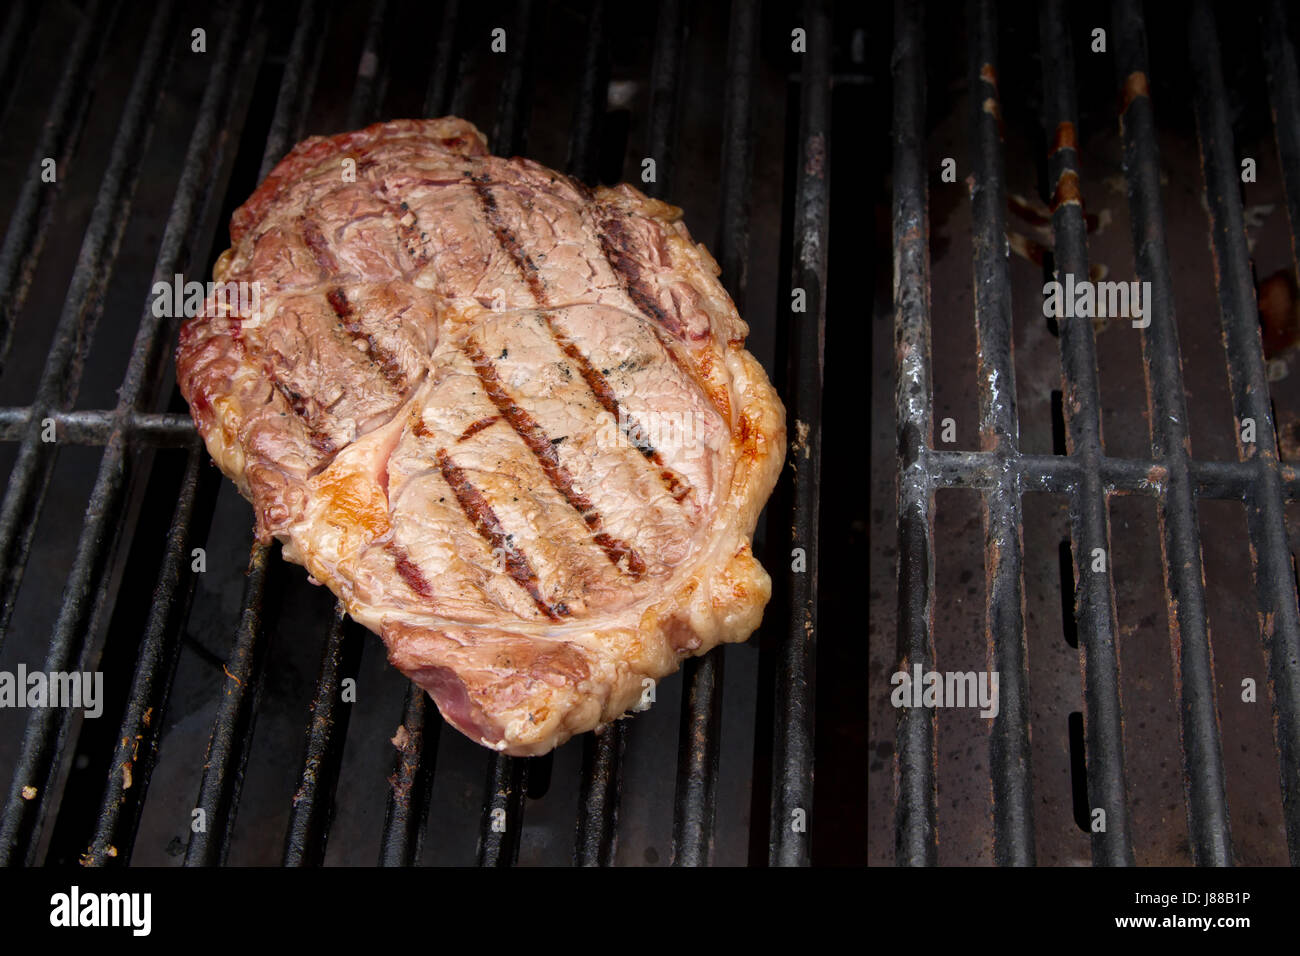 Eine gebratene Ribeye Steak Grillen auf einem Gasgrill Stockfotografie -  Alamy